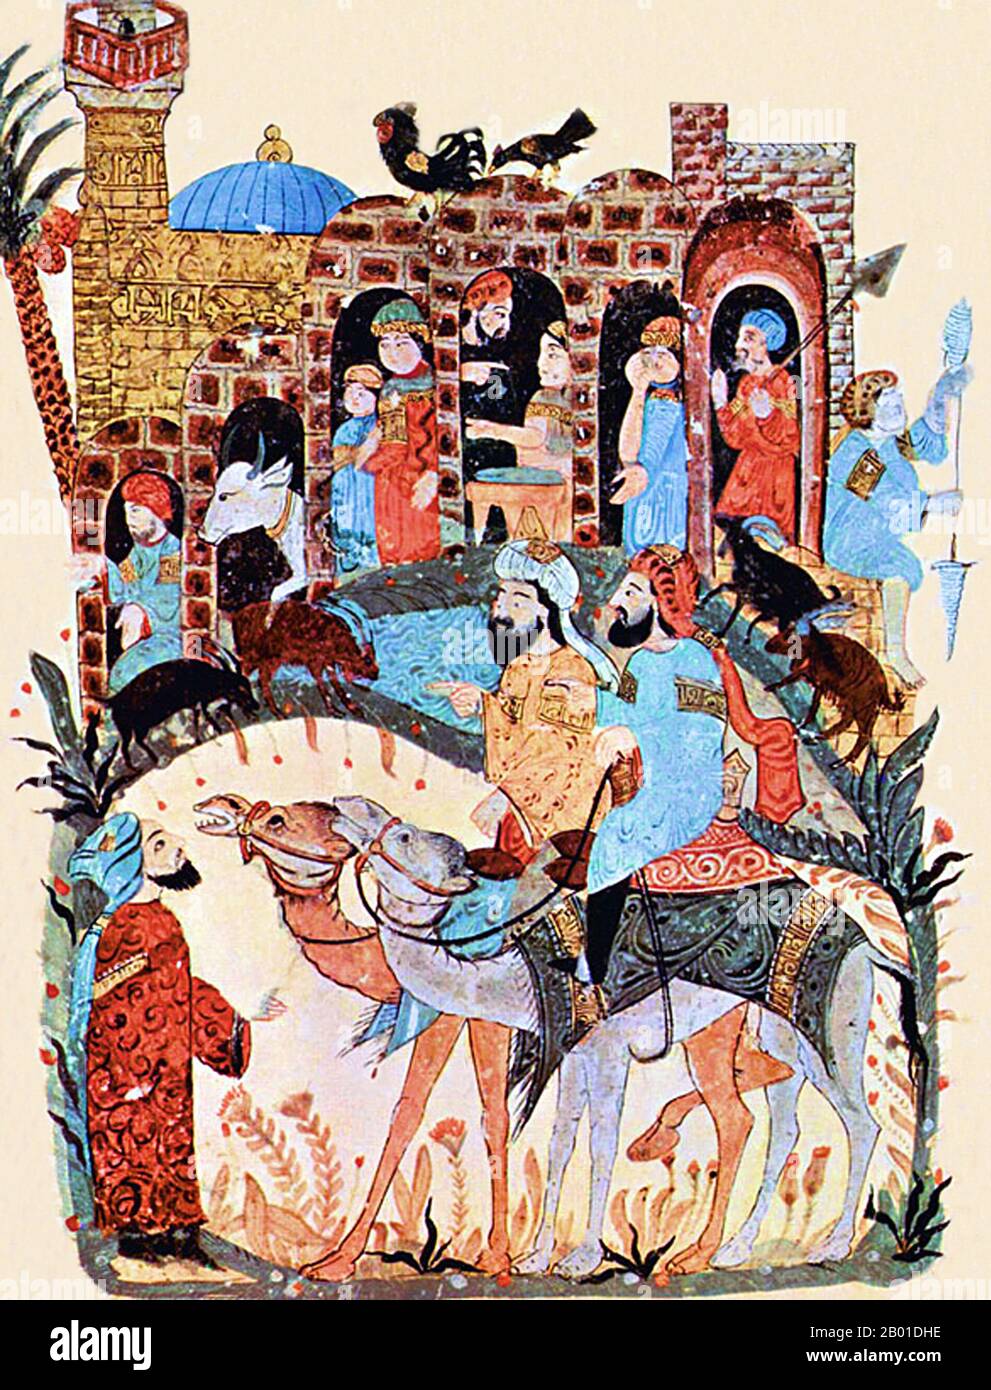 Iraq/Arabia: Una conversazione in un villaggio. Miniatura di Yahya ibn Mahmud al-Wasiti (13th ° secolo), 1237 CE. Yahyâ ibn Mahmûd al-Wâsitî è stato un artista arabo islamico del 13th° secolo. Al-Wasiti è nato a Wasit, nel sud dell'Iraq. Fu notato per le sue illustrazioni del Maqam di al-Hariri. Maqāma (letteralmente 'assemblee') sono un genere letterario arabo (originariamente) di prosa rima con intervalli di poesia in cui lo stravagamento retorico è cospicuo. Si dice che l'autore del 10th° secolo Badī' al-Zaman al-Hamadhāni abbia inventato la forma, che fu estesa da al-Hariri di Bassora nel secolo successivo. Foto Stock